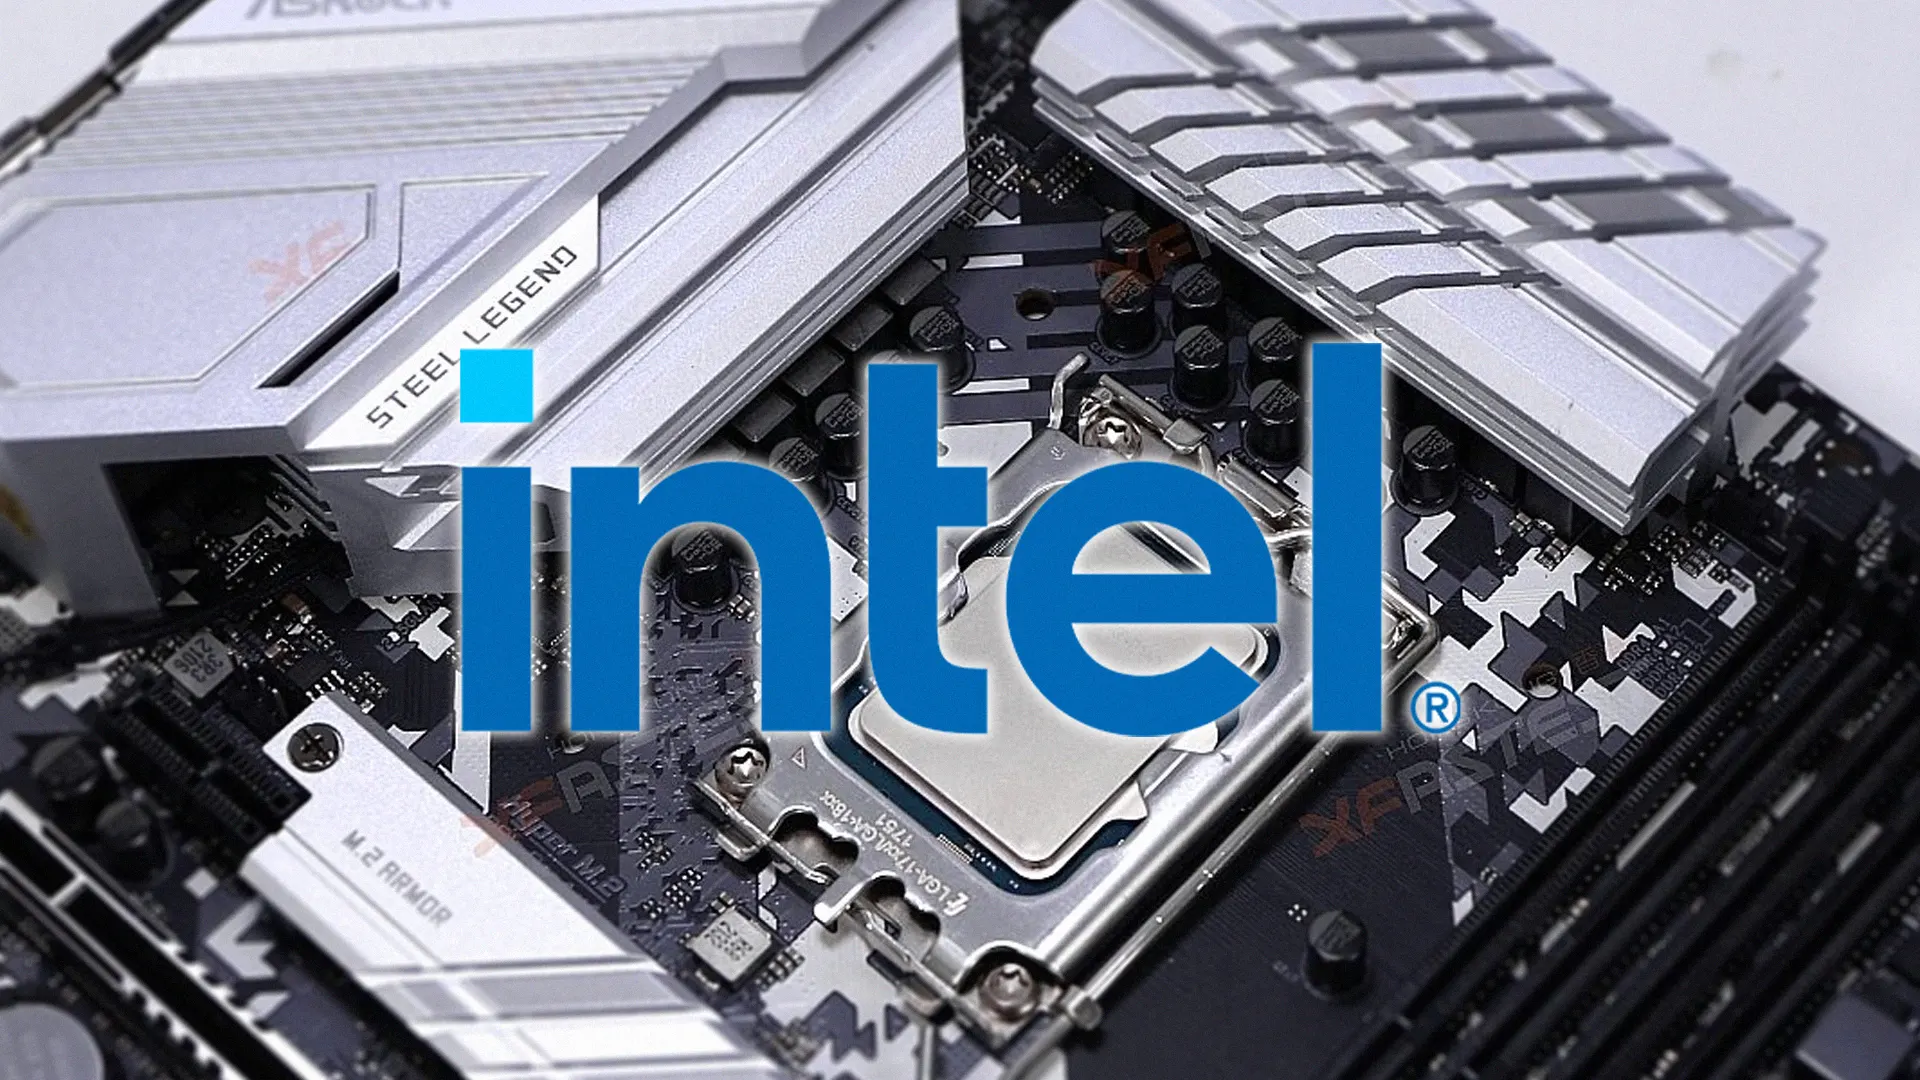 A geração Alder Lake da Intel tem se mostrado com desempenho superior aos Ryzen. O i3-12100 tem desempenho superior ao Ryzen 3 3300X!